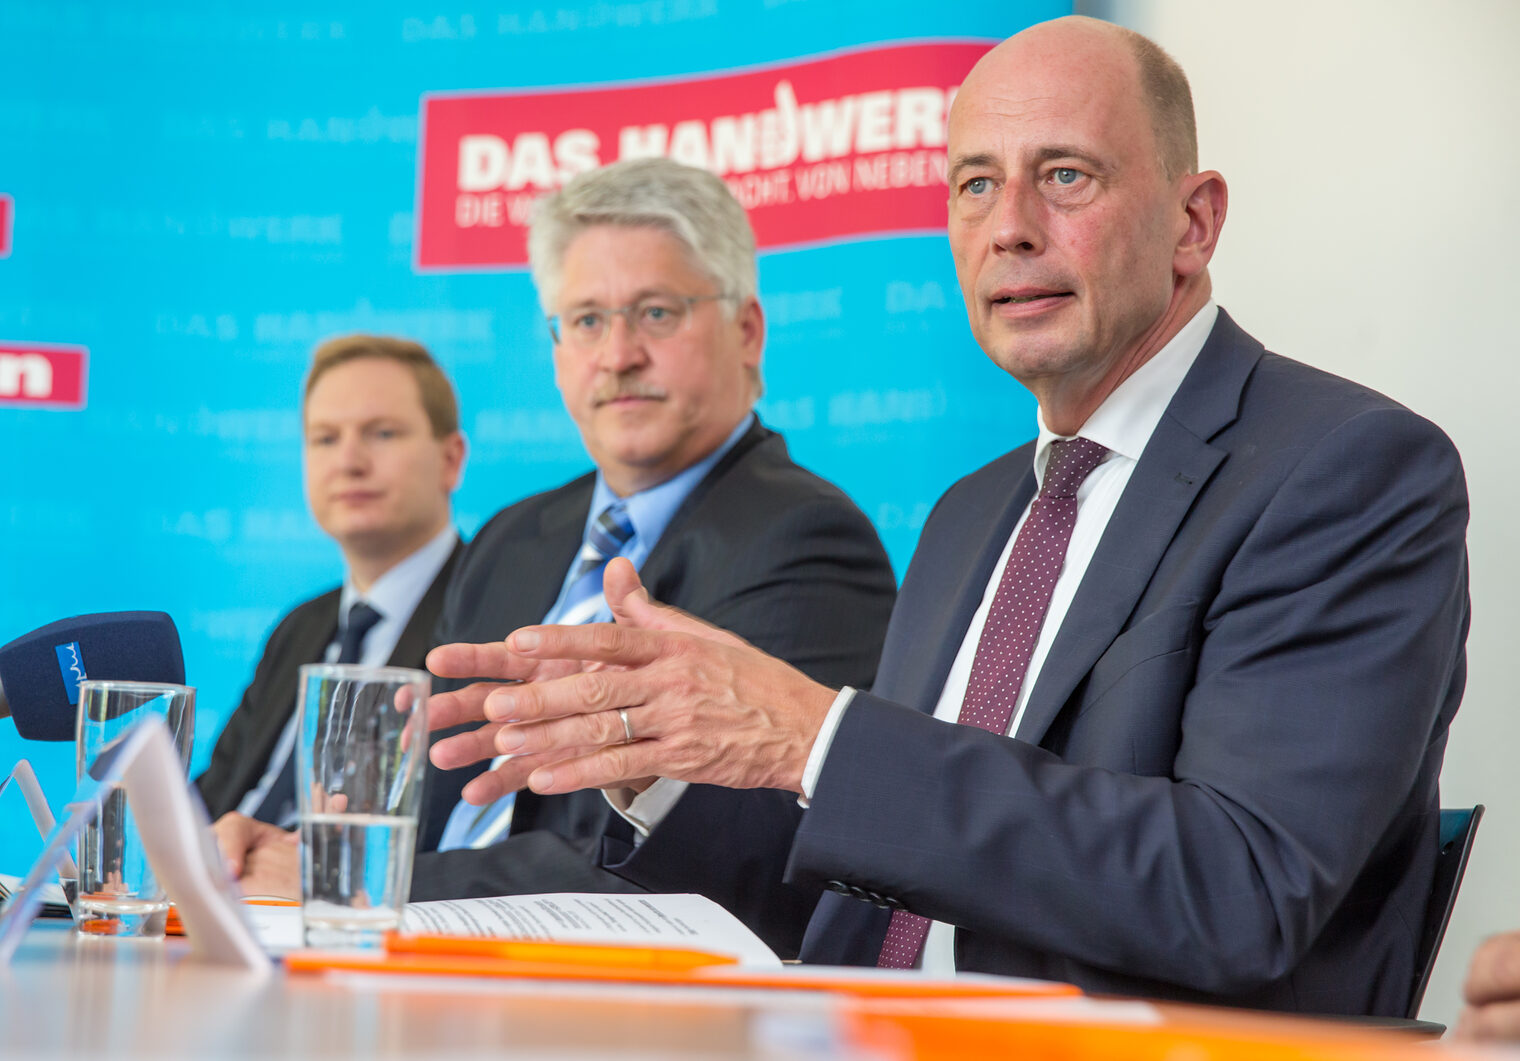 Wirtschaftsminister Wolfgang Tiefensee (SPD) spricht am 15.07.2015 bei der DMF Werkzeugbau GmbH in Nohra. Die Handwerkskammer Erfurt hatte mit der "Tour de Handwerk - Handwerk ist digital" zu einer Besichtigung von Handwerksbetrieben eingeladen.